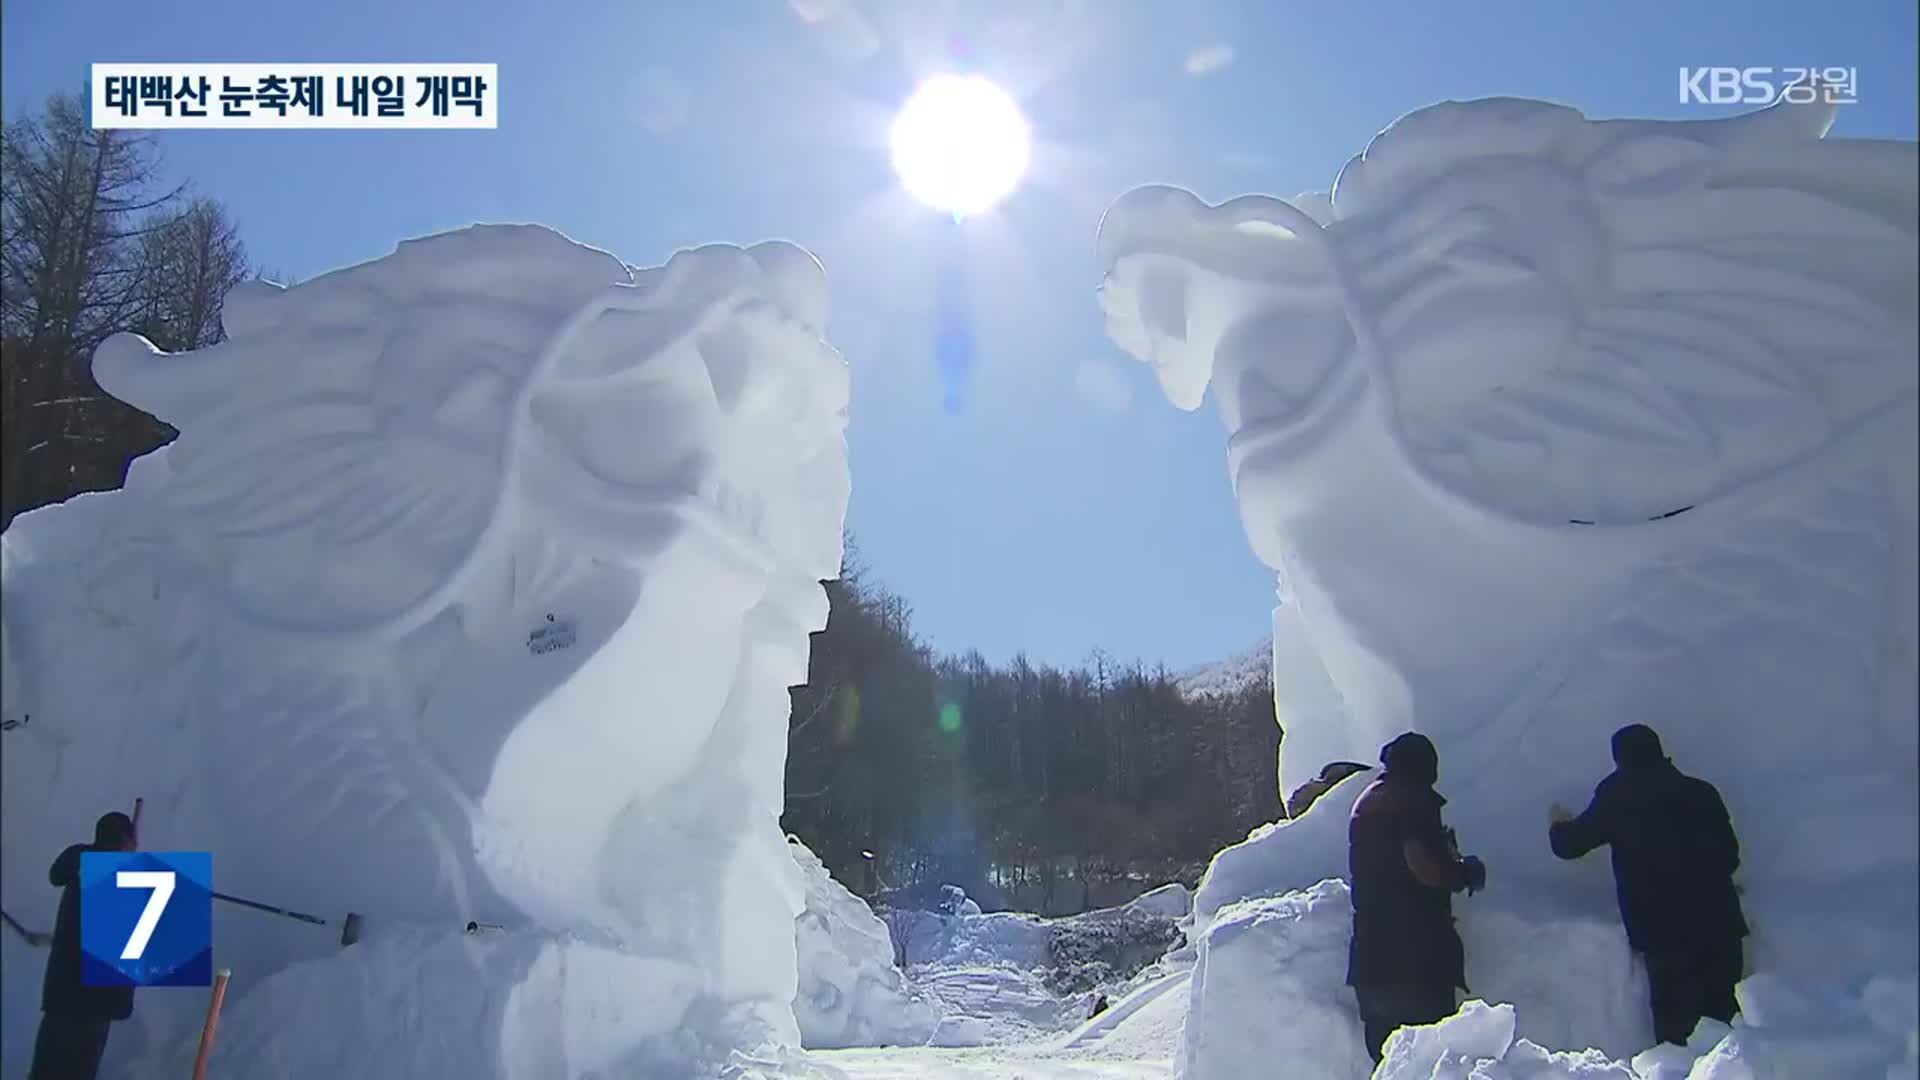 ‘태백산 눈축제’ 내일 개막…거대 ‘눈 조각’ 매력 발산